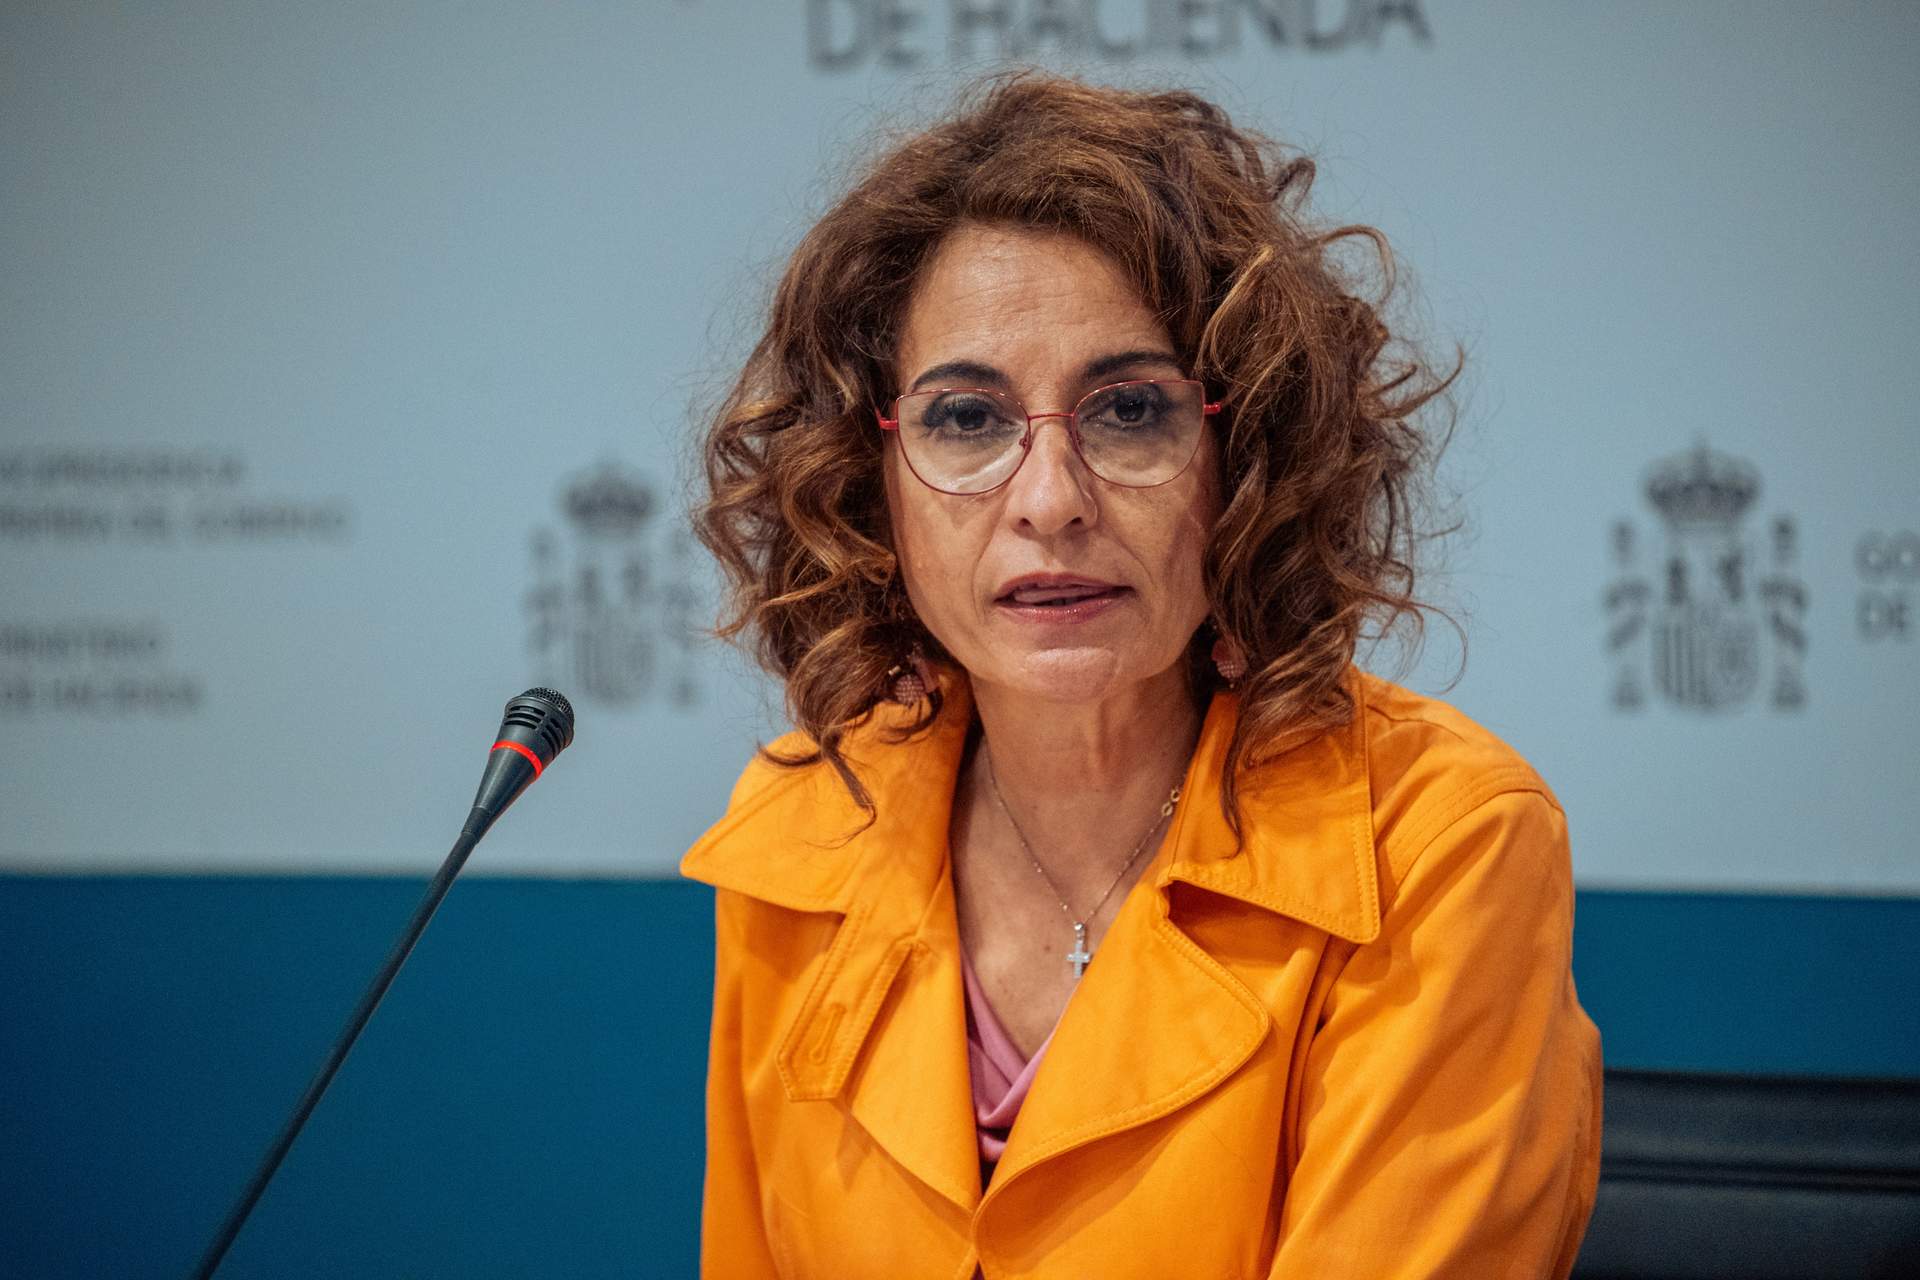 Gobierno nombra subsecretaria de Hacienda a Lidia Sánchez Milán, exsecretaria de Estado de Función Pública